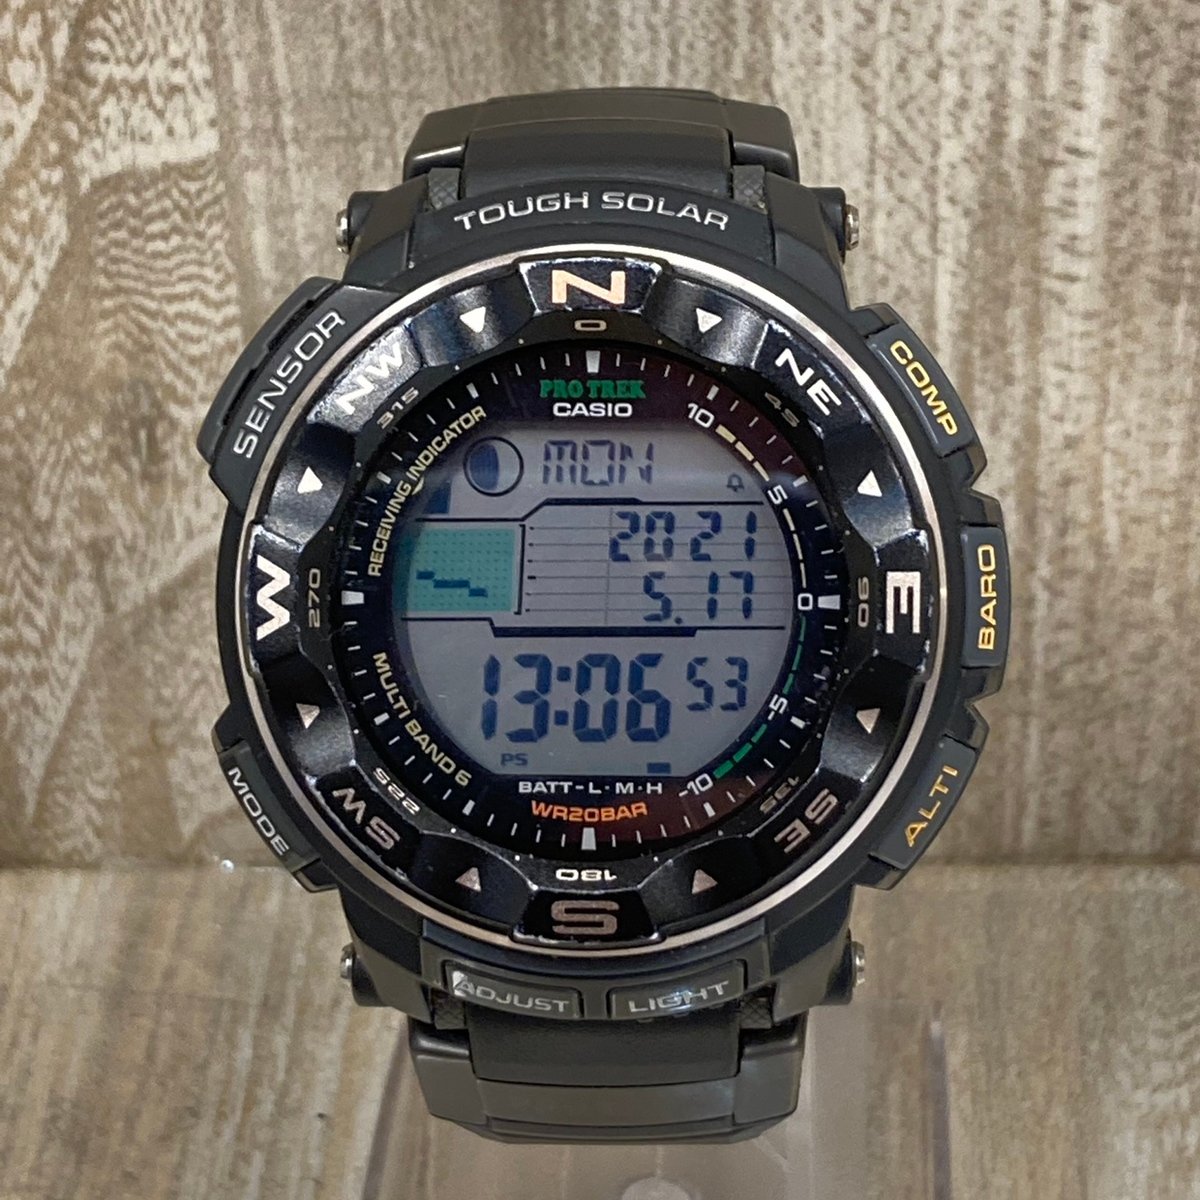 カシオのPRW-2500-1JF プロトレック ソーラー時計の買取実績です。